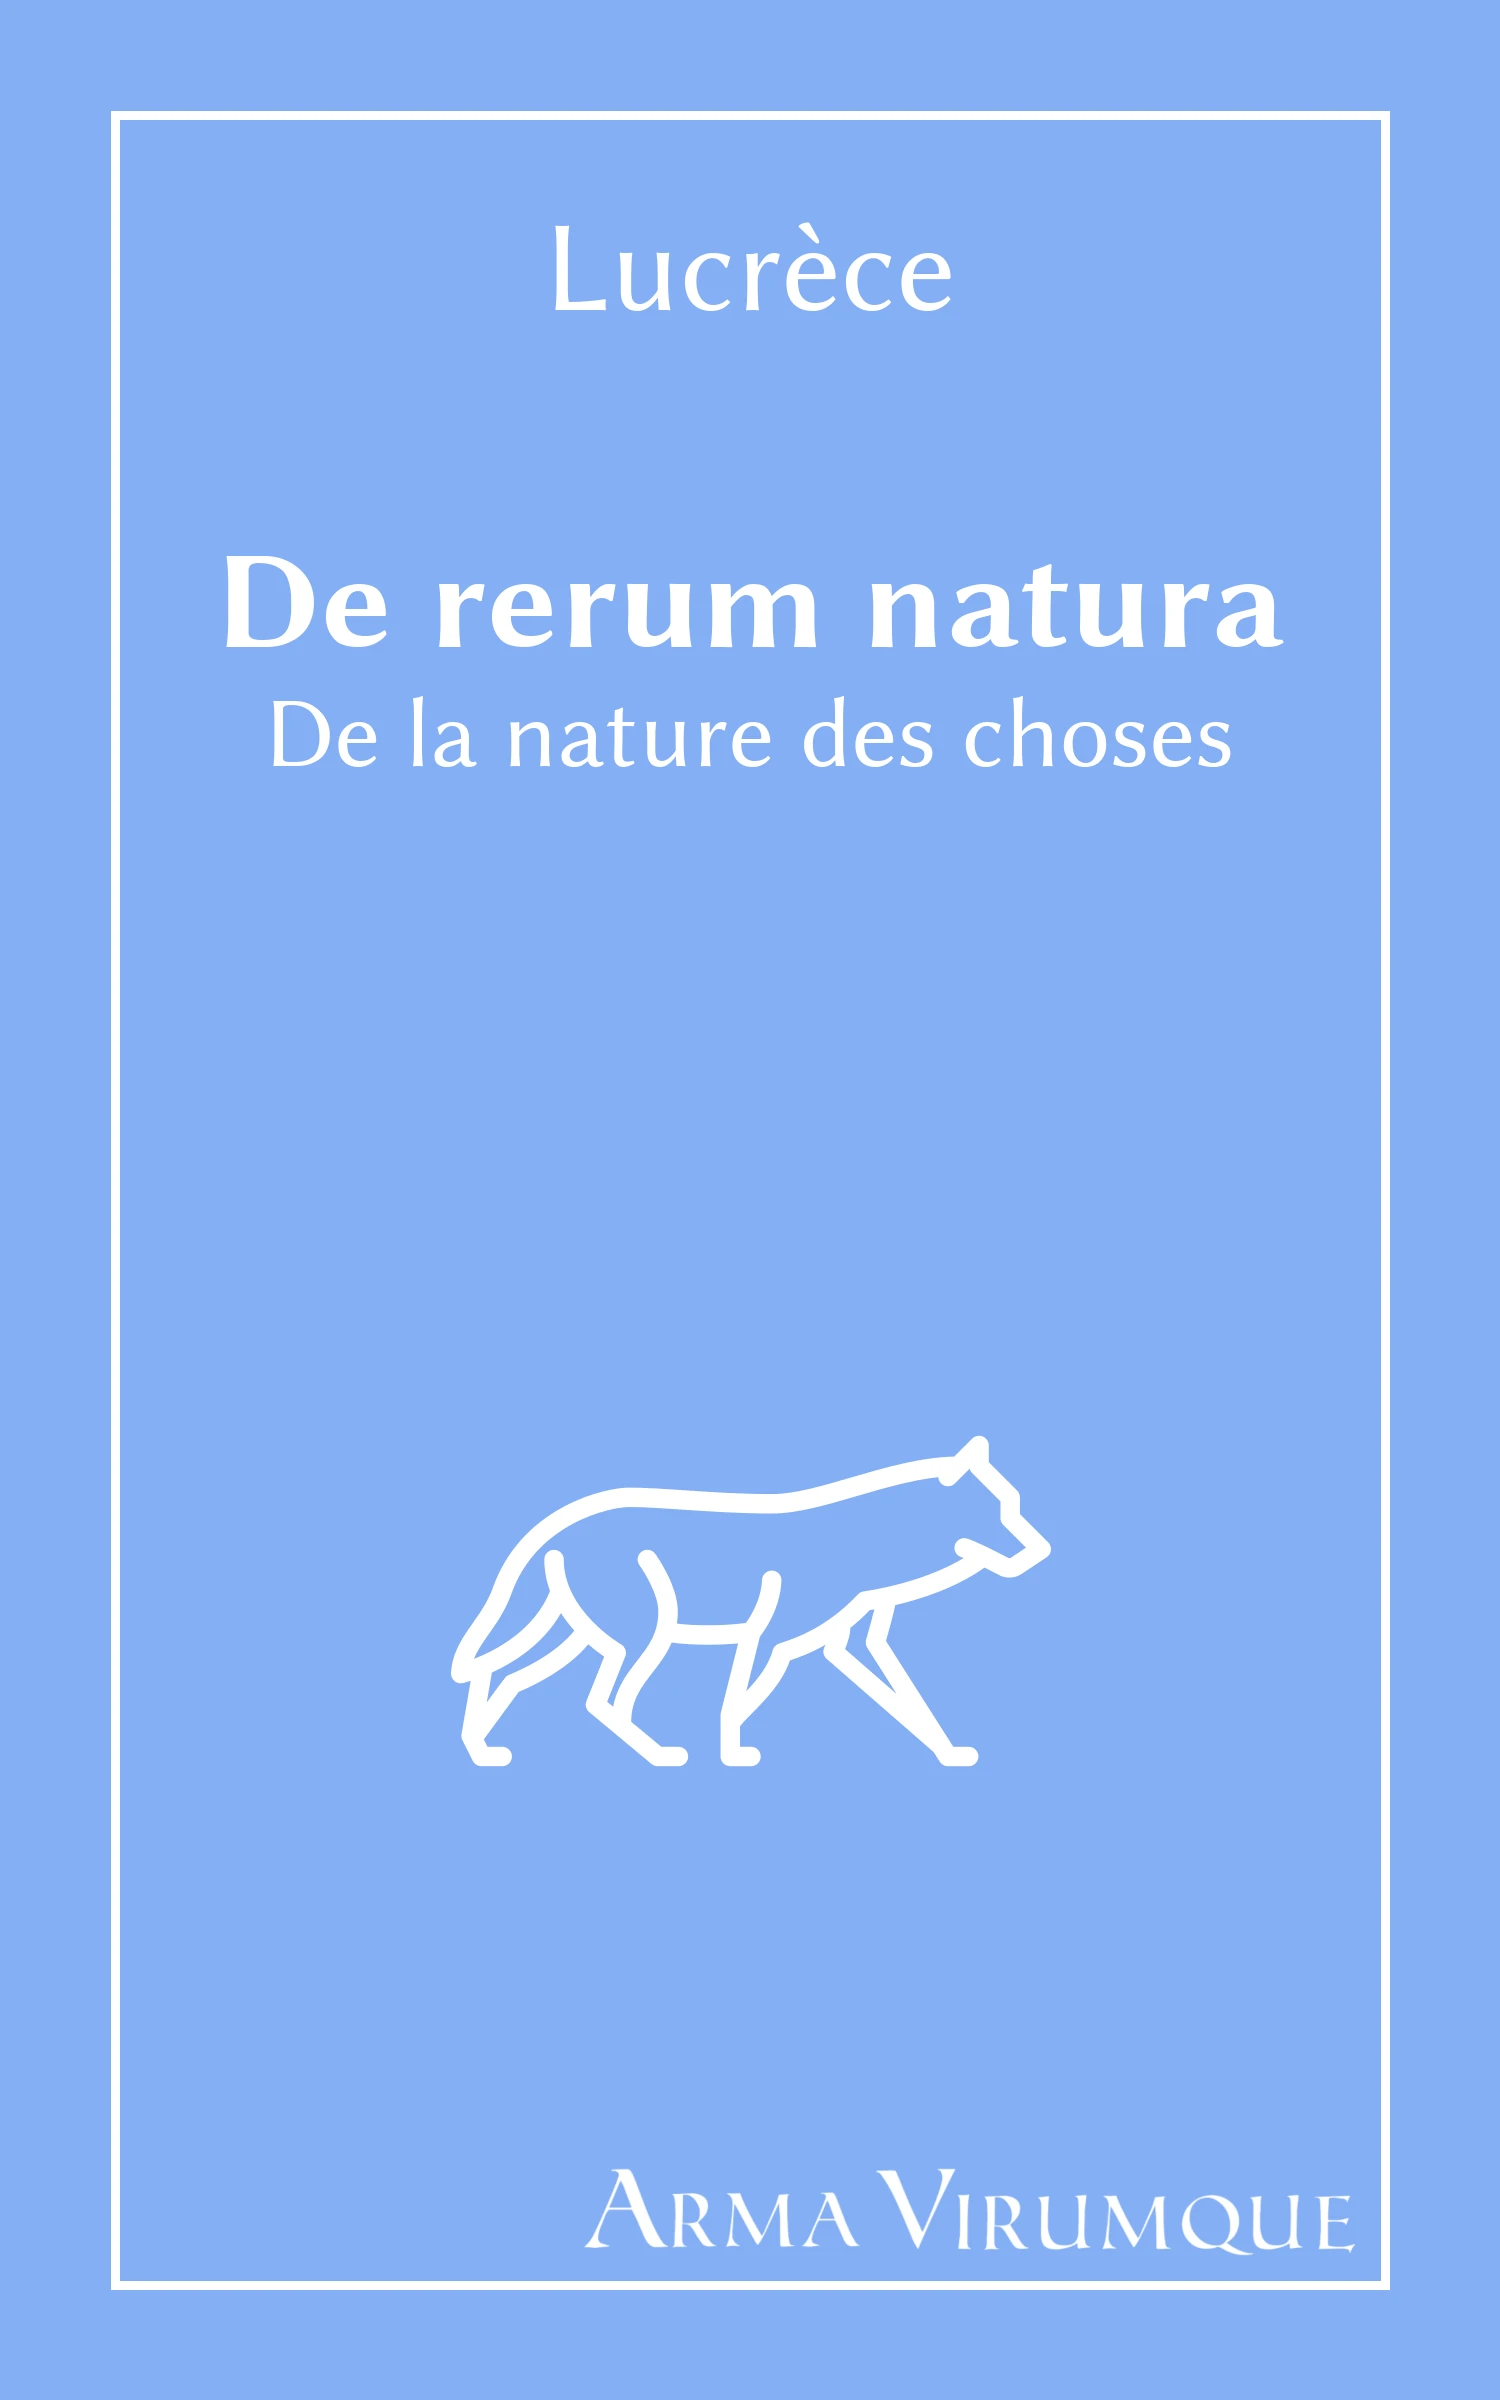 Couverture De rerum natura (De la nature des choses) de Lucrèce (collection ArmaVirumque)